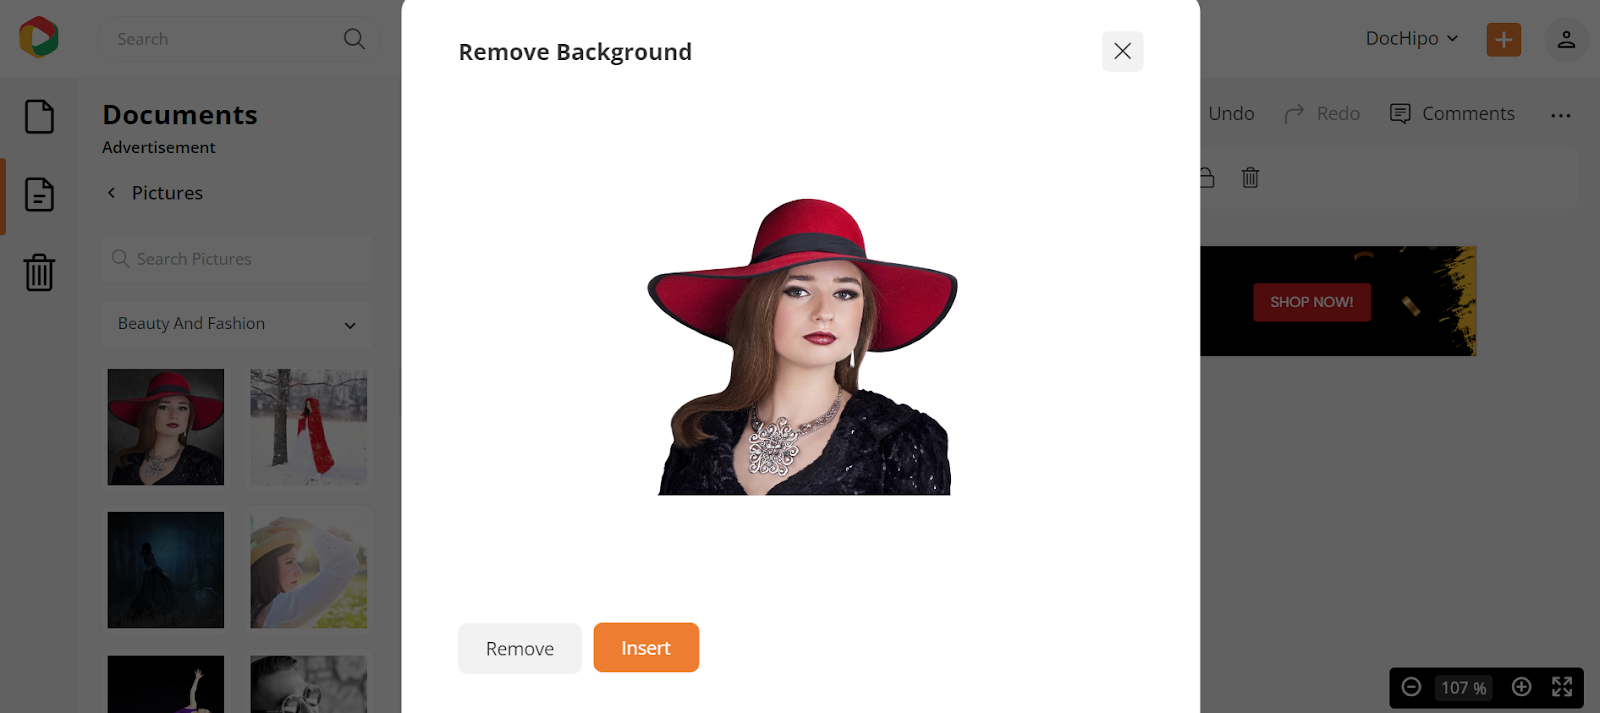 remove picture background